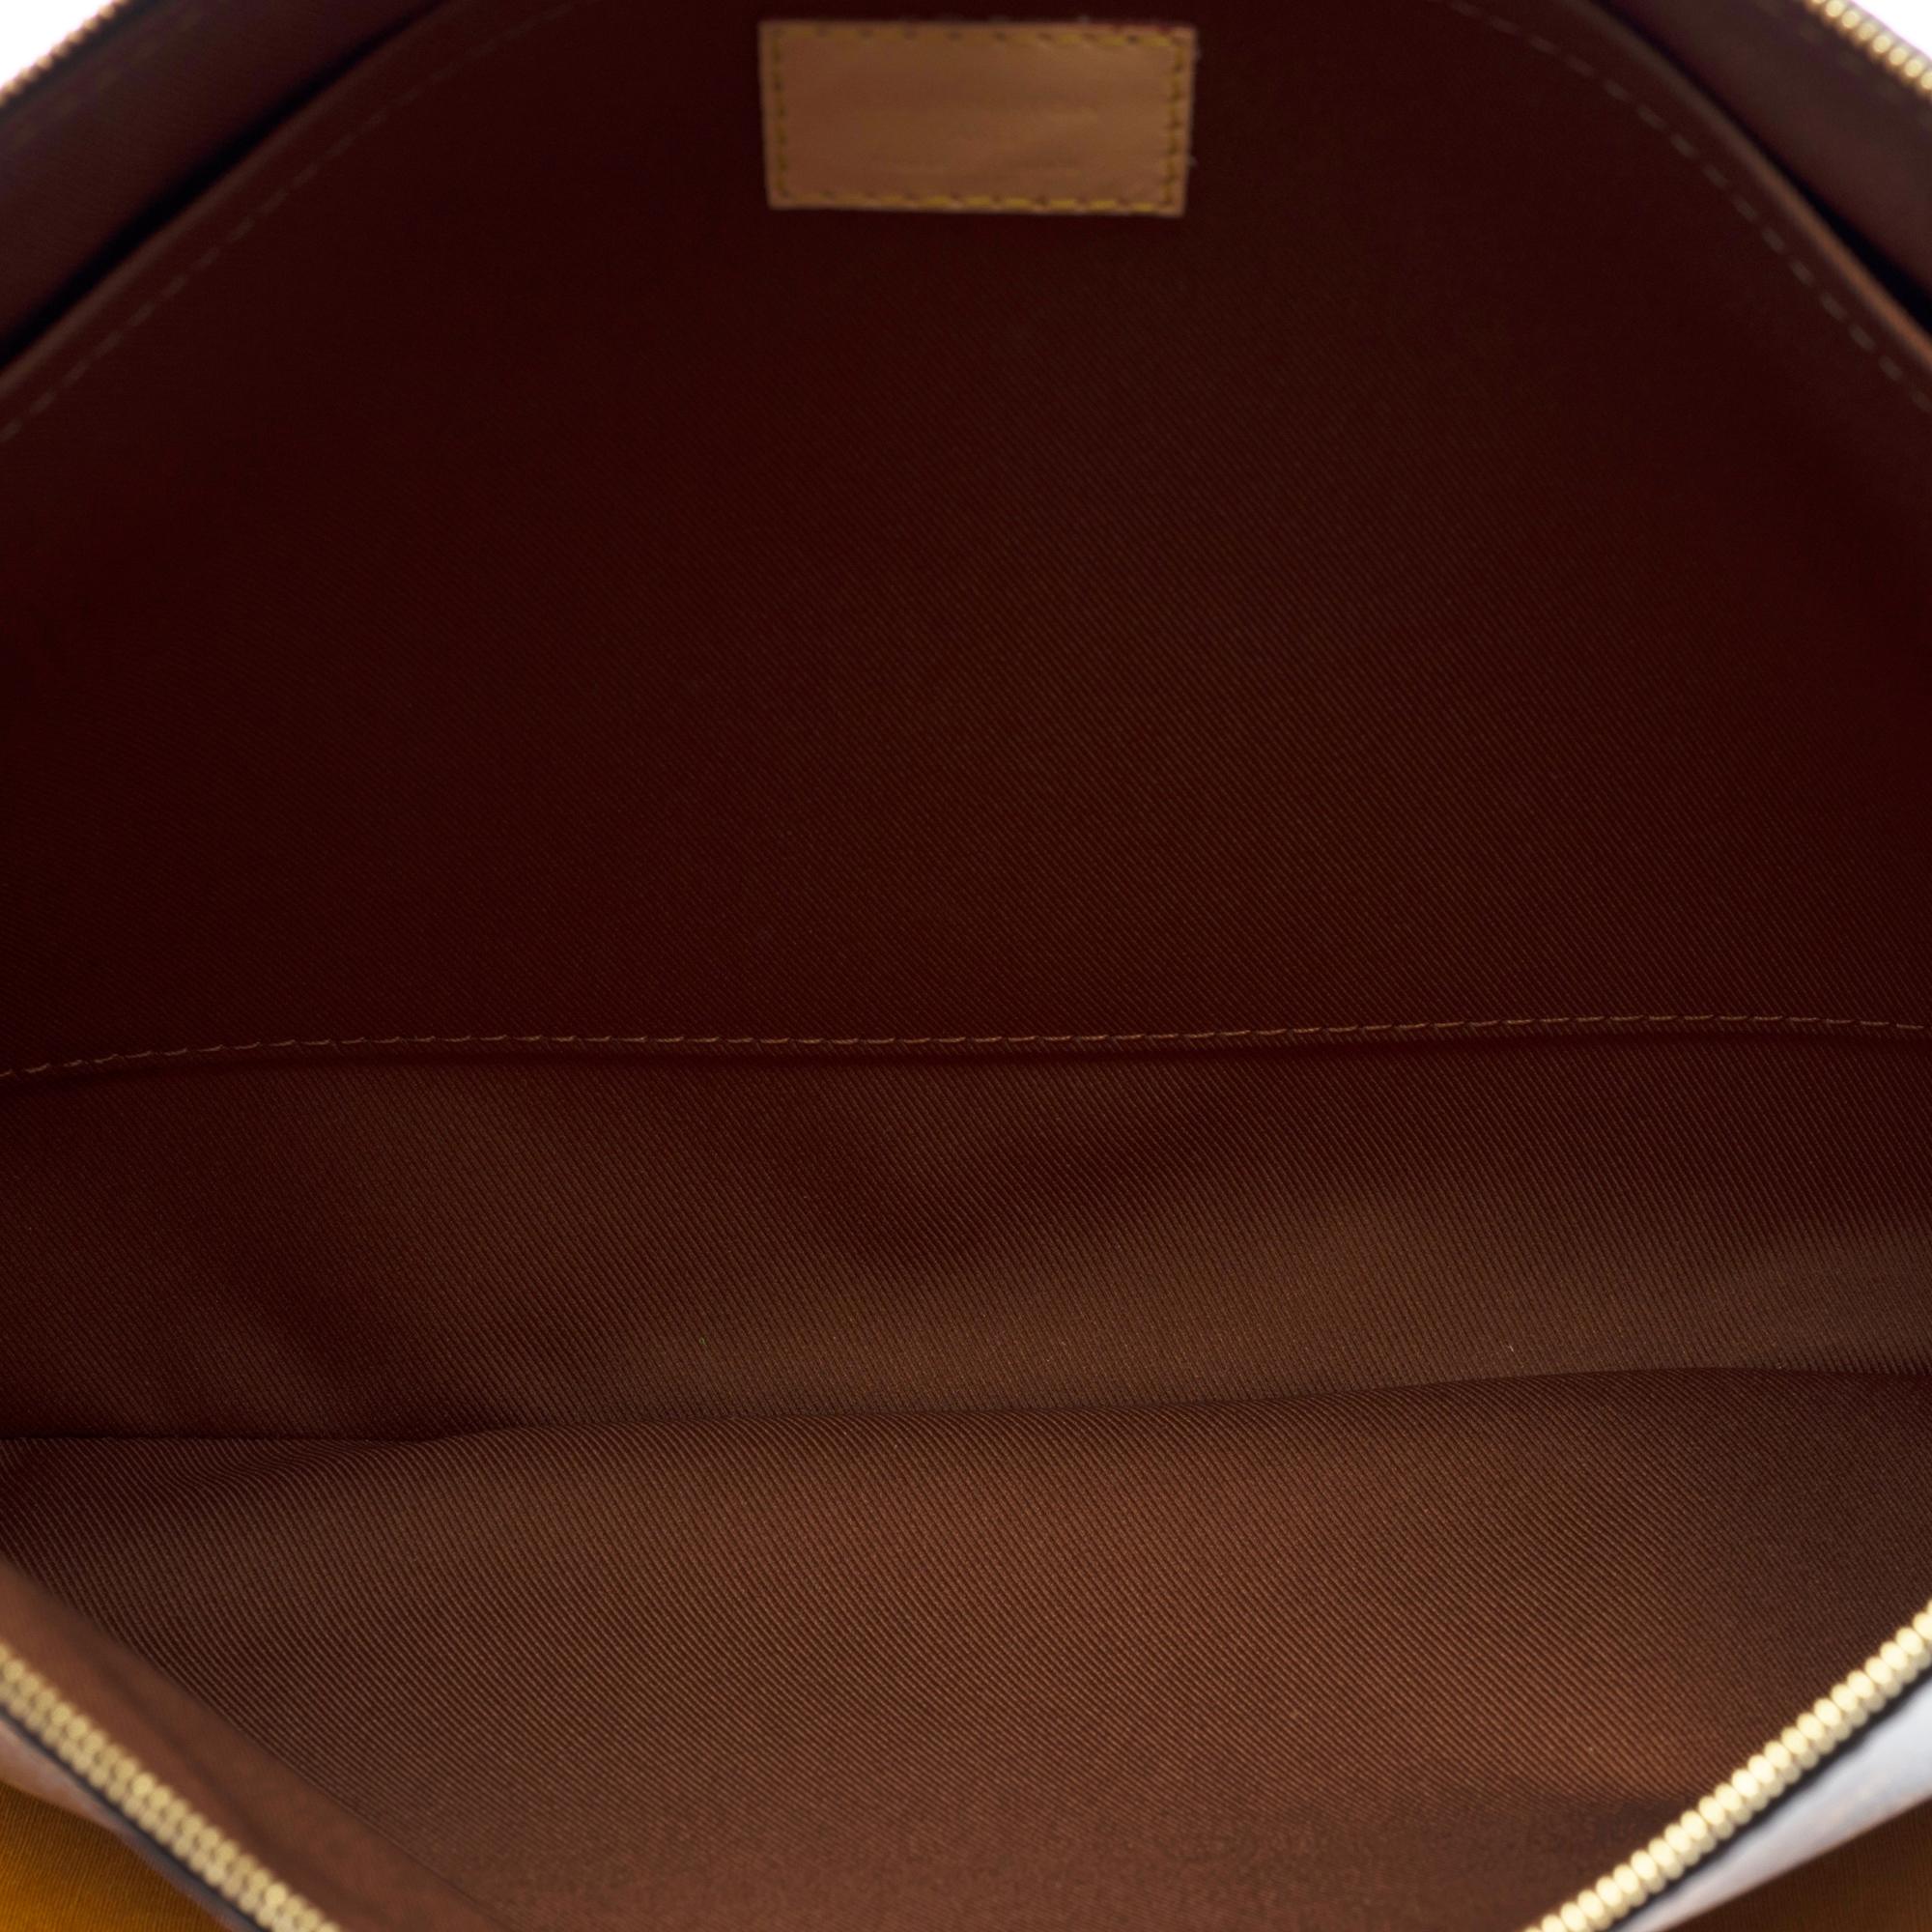 New Louis Vuitton Travel Briefcase in brown monogram canvas, GHW 5